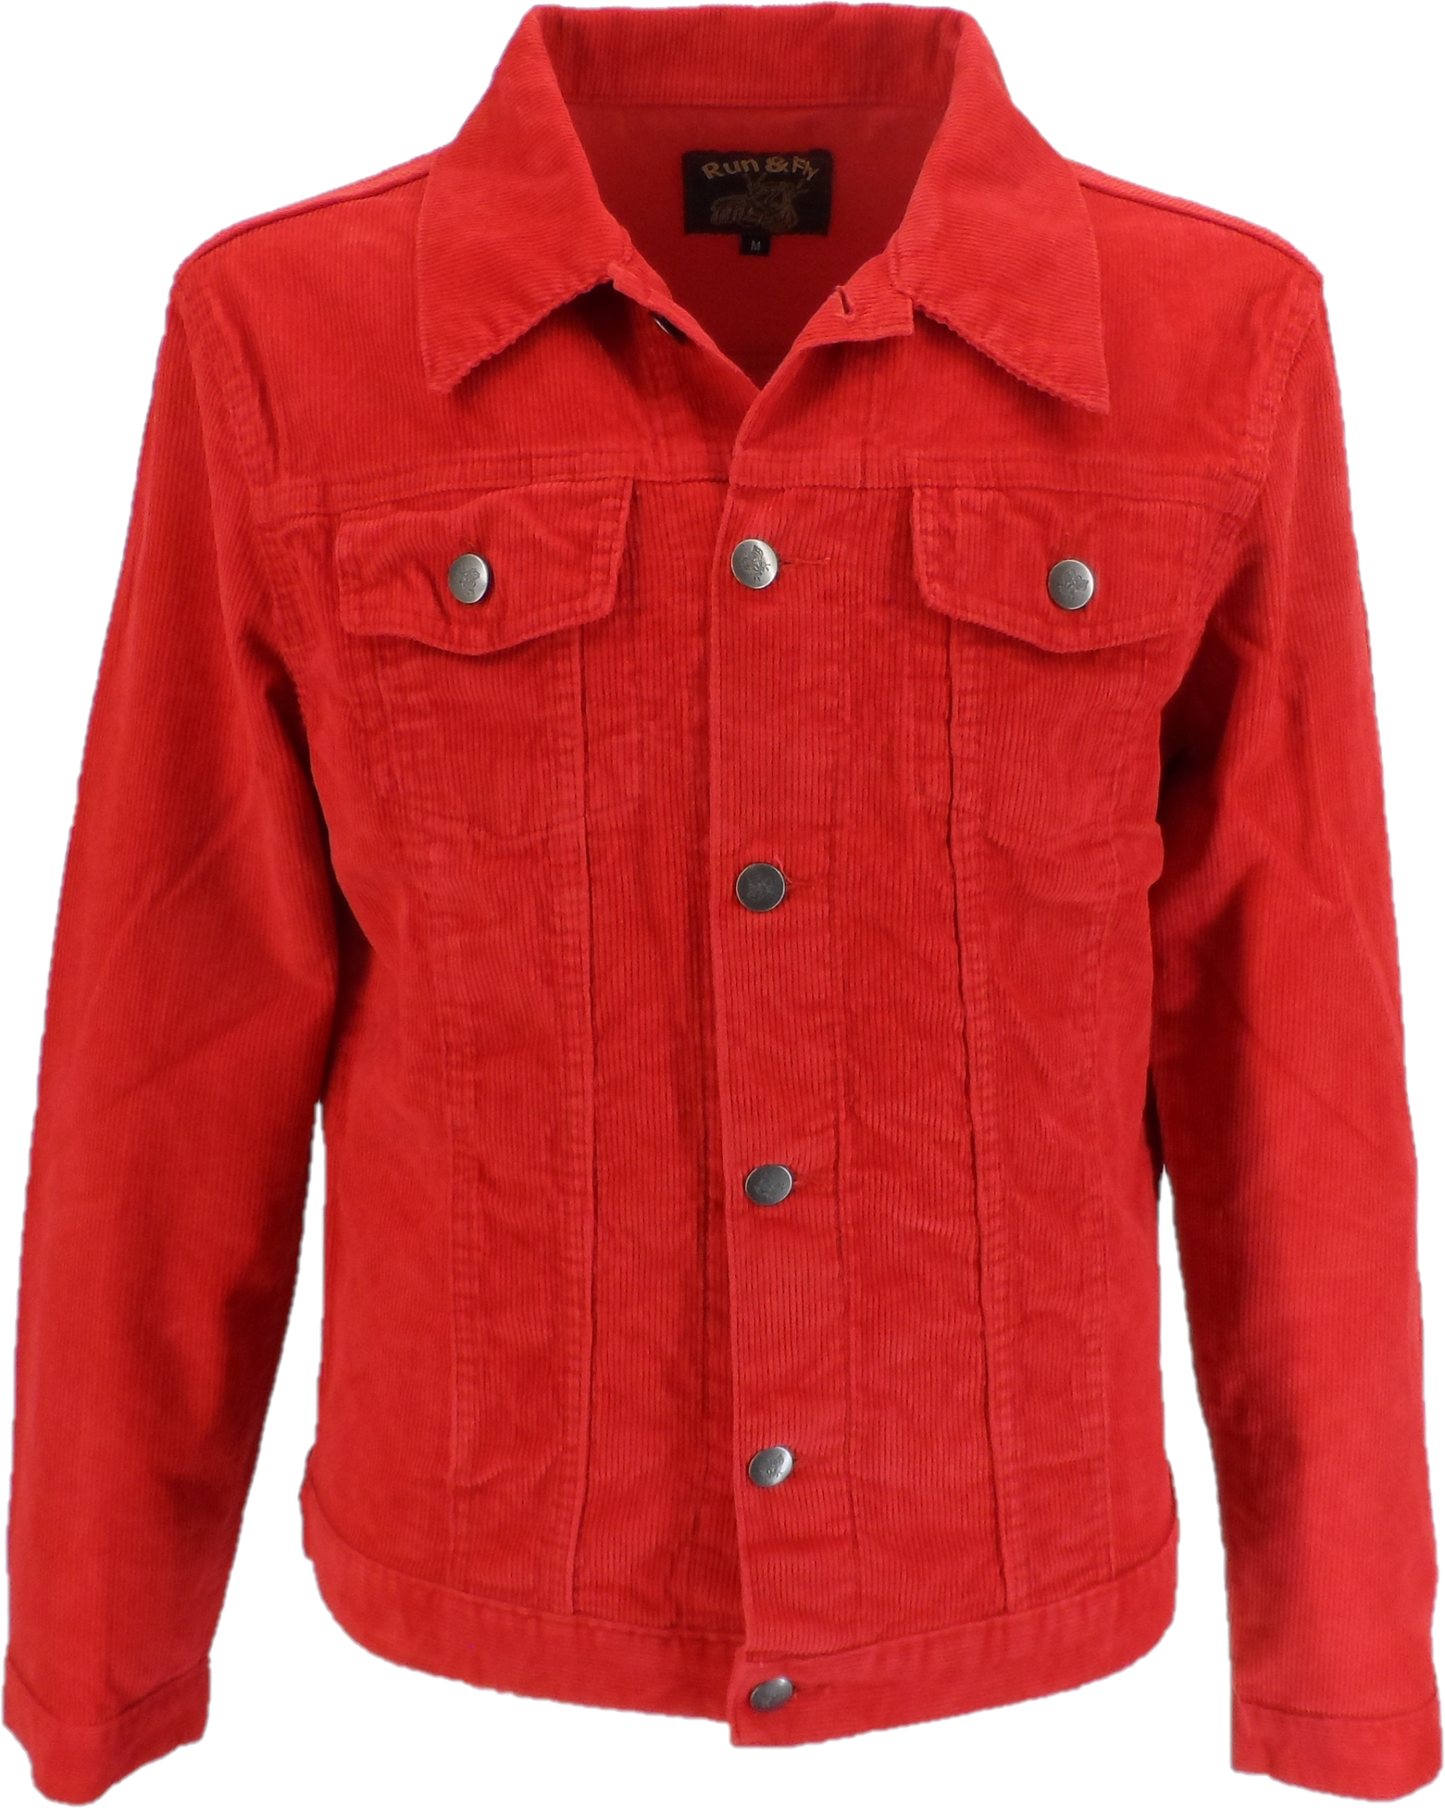 Run & Fly chaqueta de camionero occidental de cordón rojo retro vintage de los años 60 para hombre